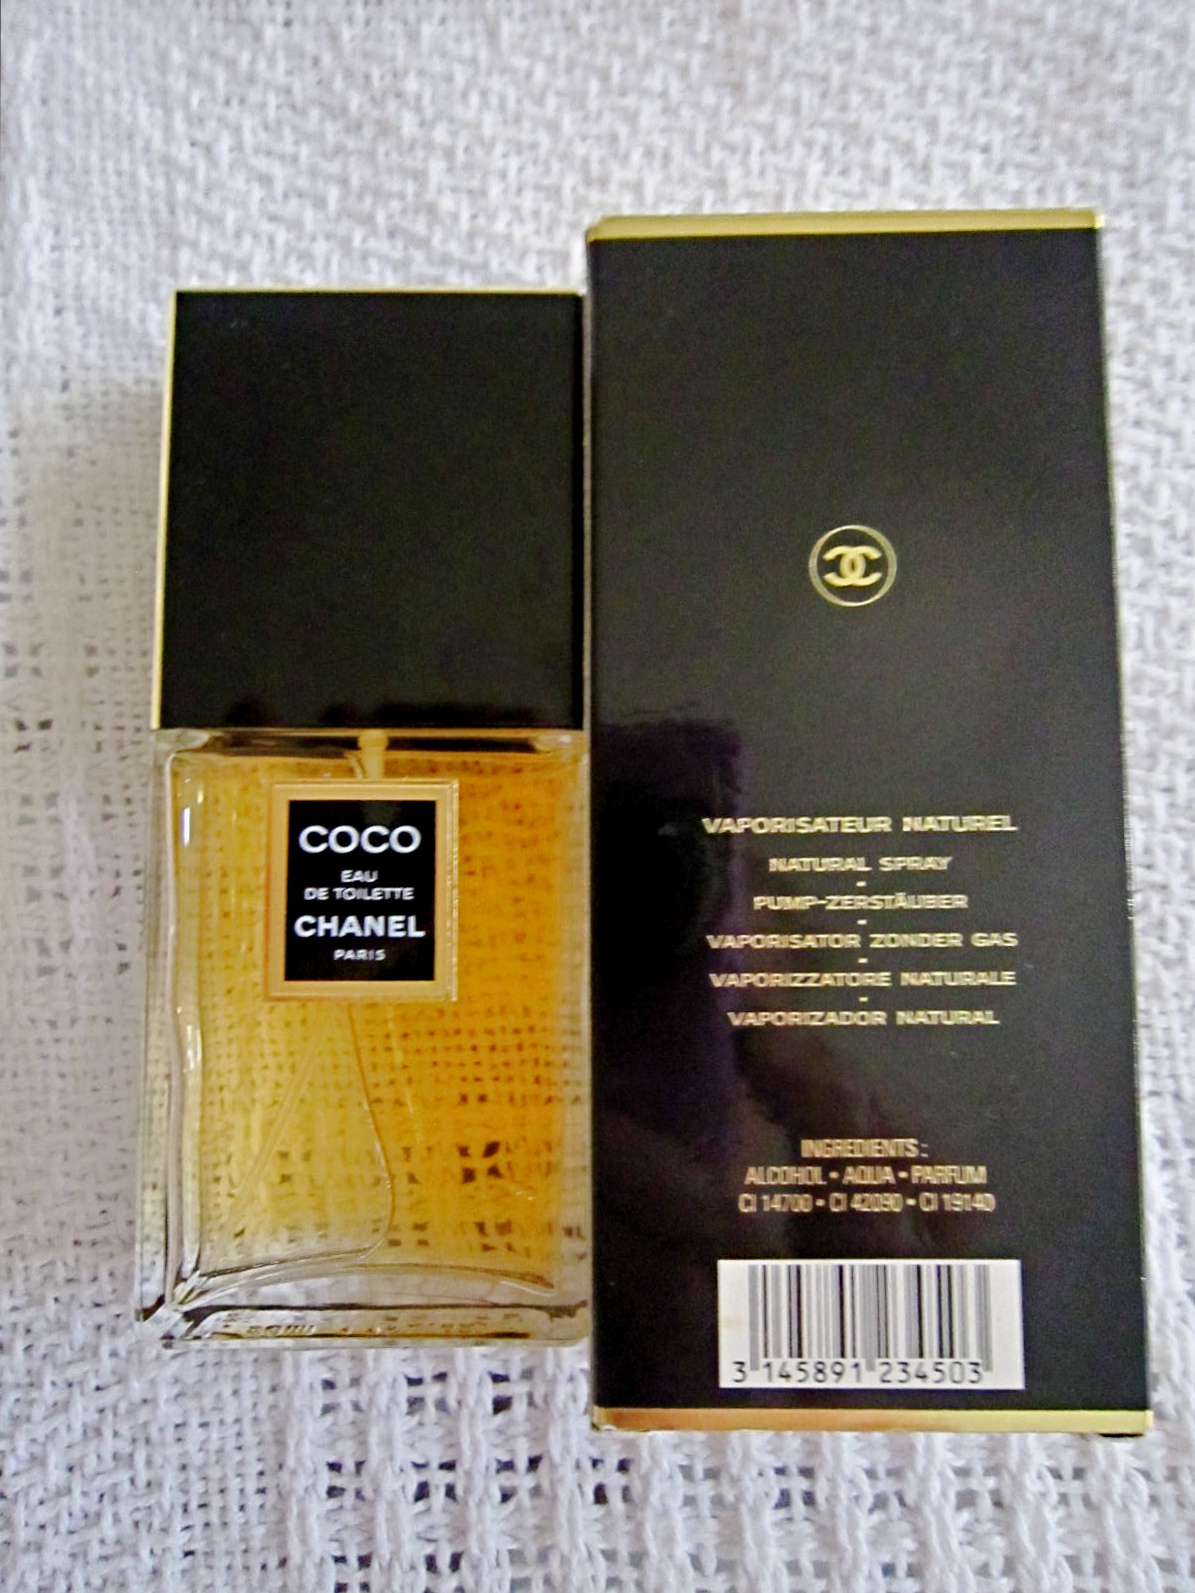 CHANEL COCO Eau de Parfum Spray